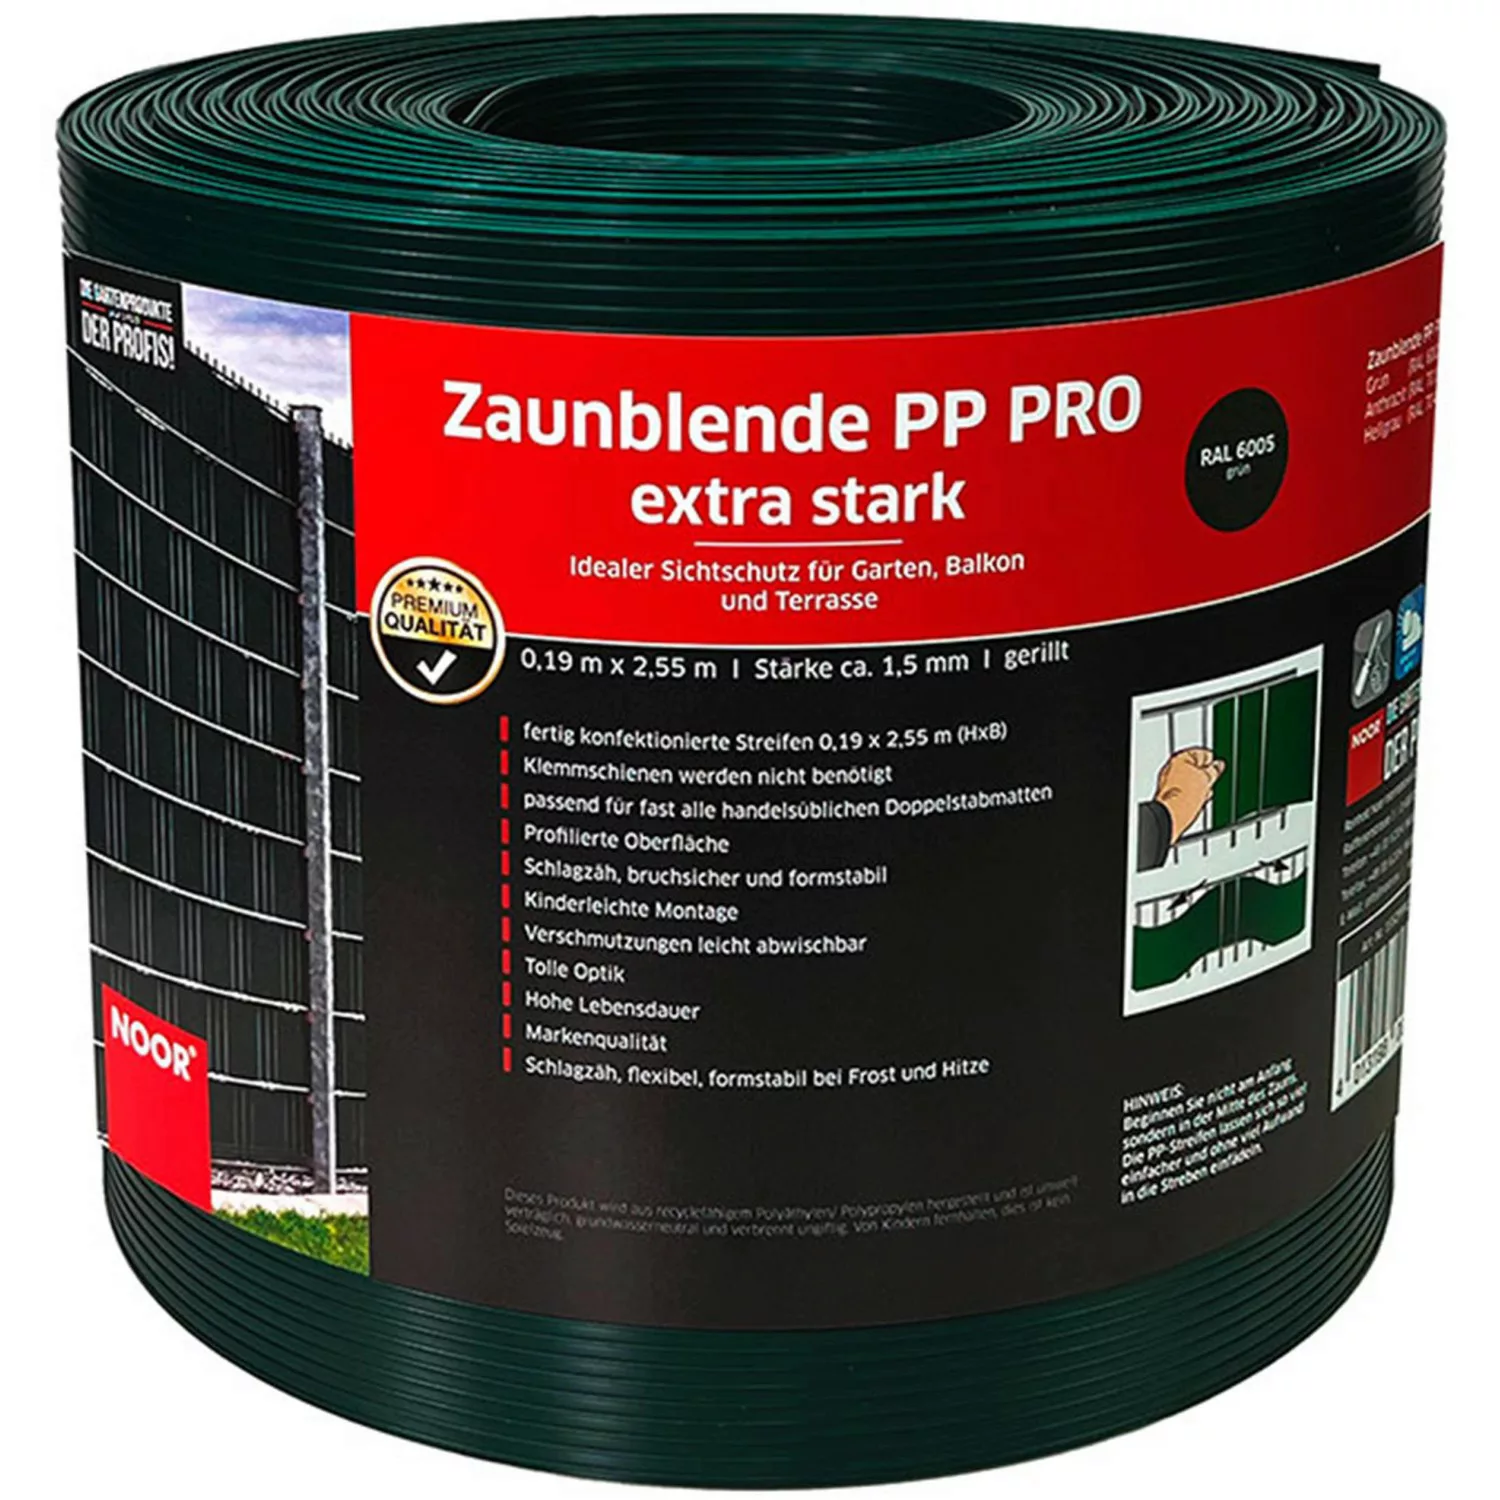 Noor Sichtschutzstreifen PP Pro Extrastark 0,19 m x 2,55 m Grün günstig online kaufen